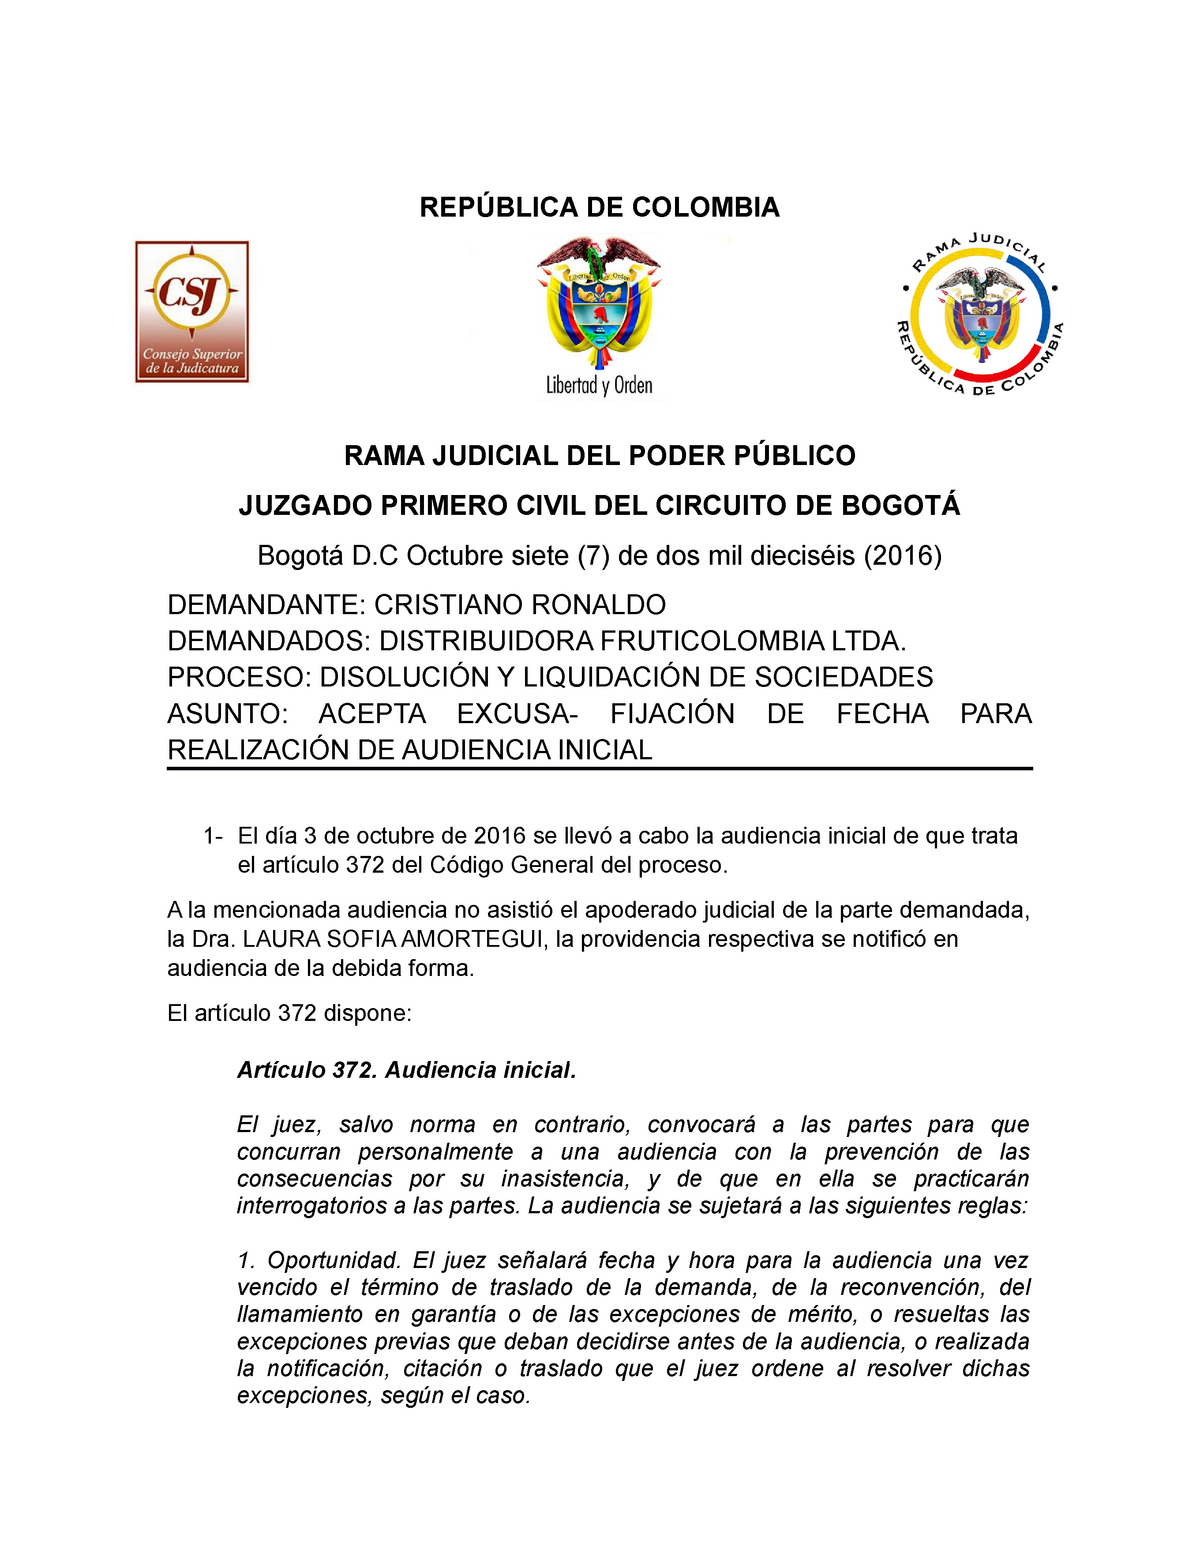 Excusa not - Auto notificado por estado - DE COLOMBIA RAMA JUDICIAL DEL  PODER JUZGADO PRIMERO CIVIL - Studocu